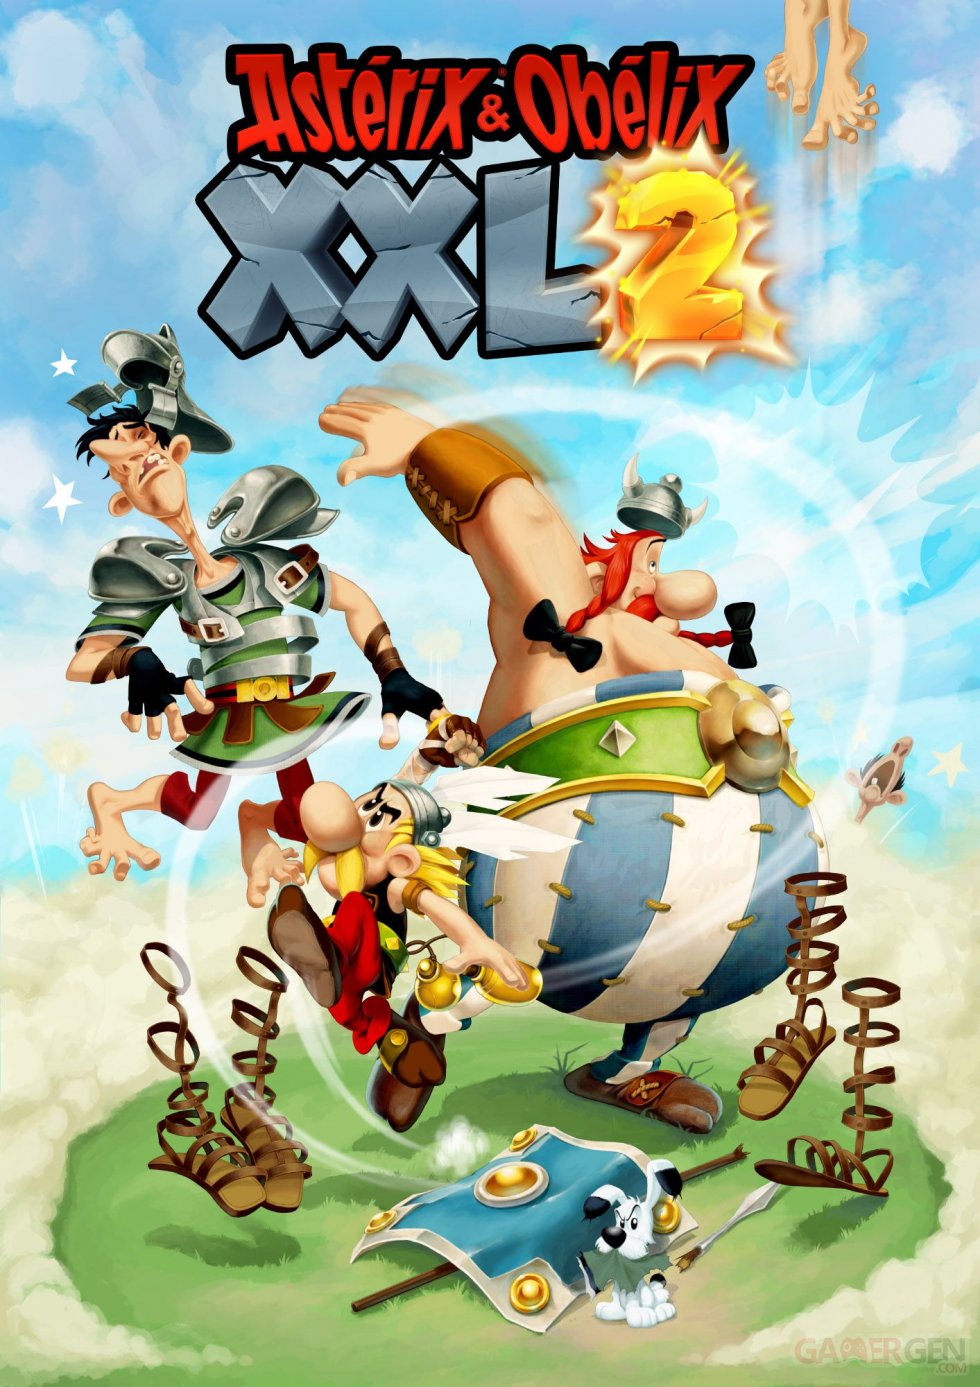 Astérix-Obélix-XXL-2-artwork-02-01-10-2018